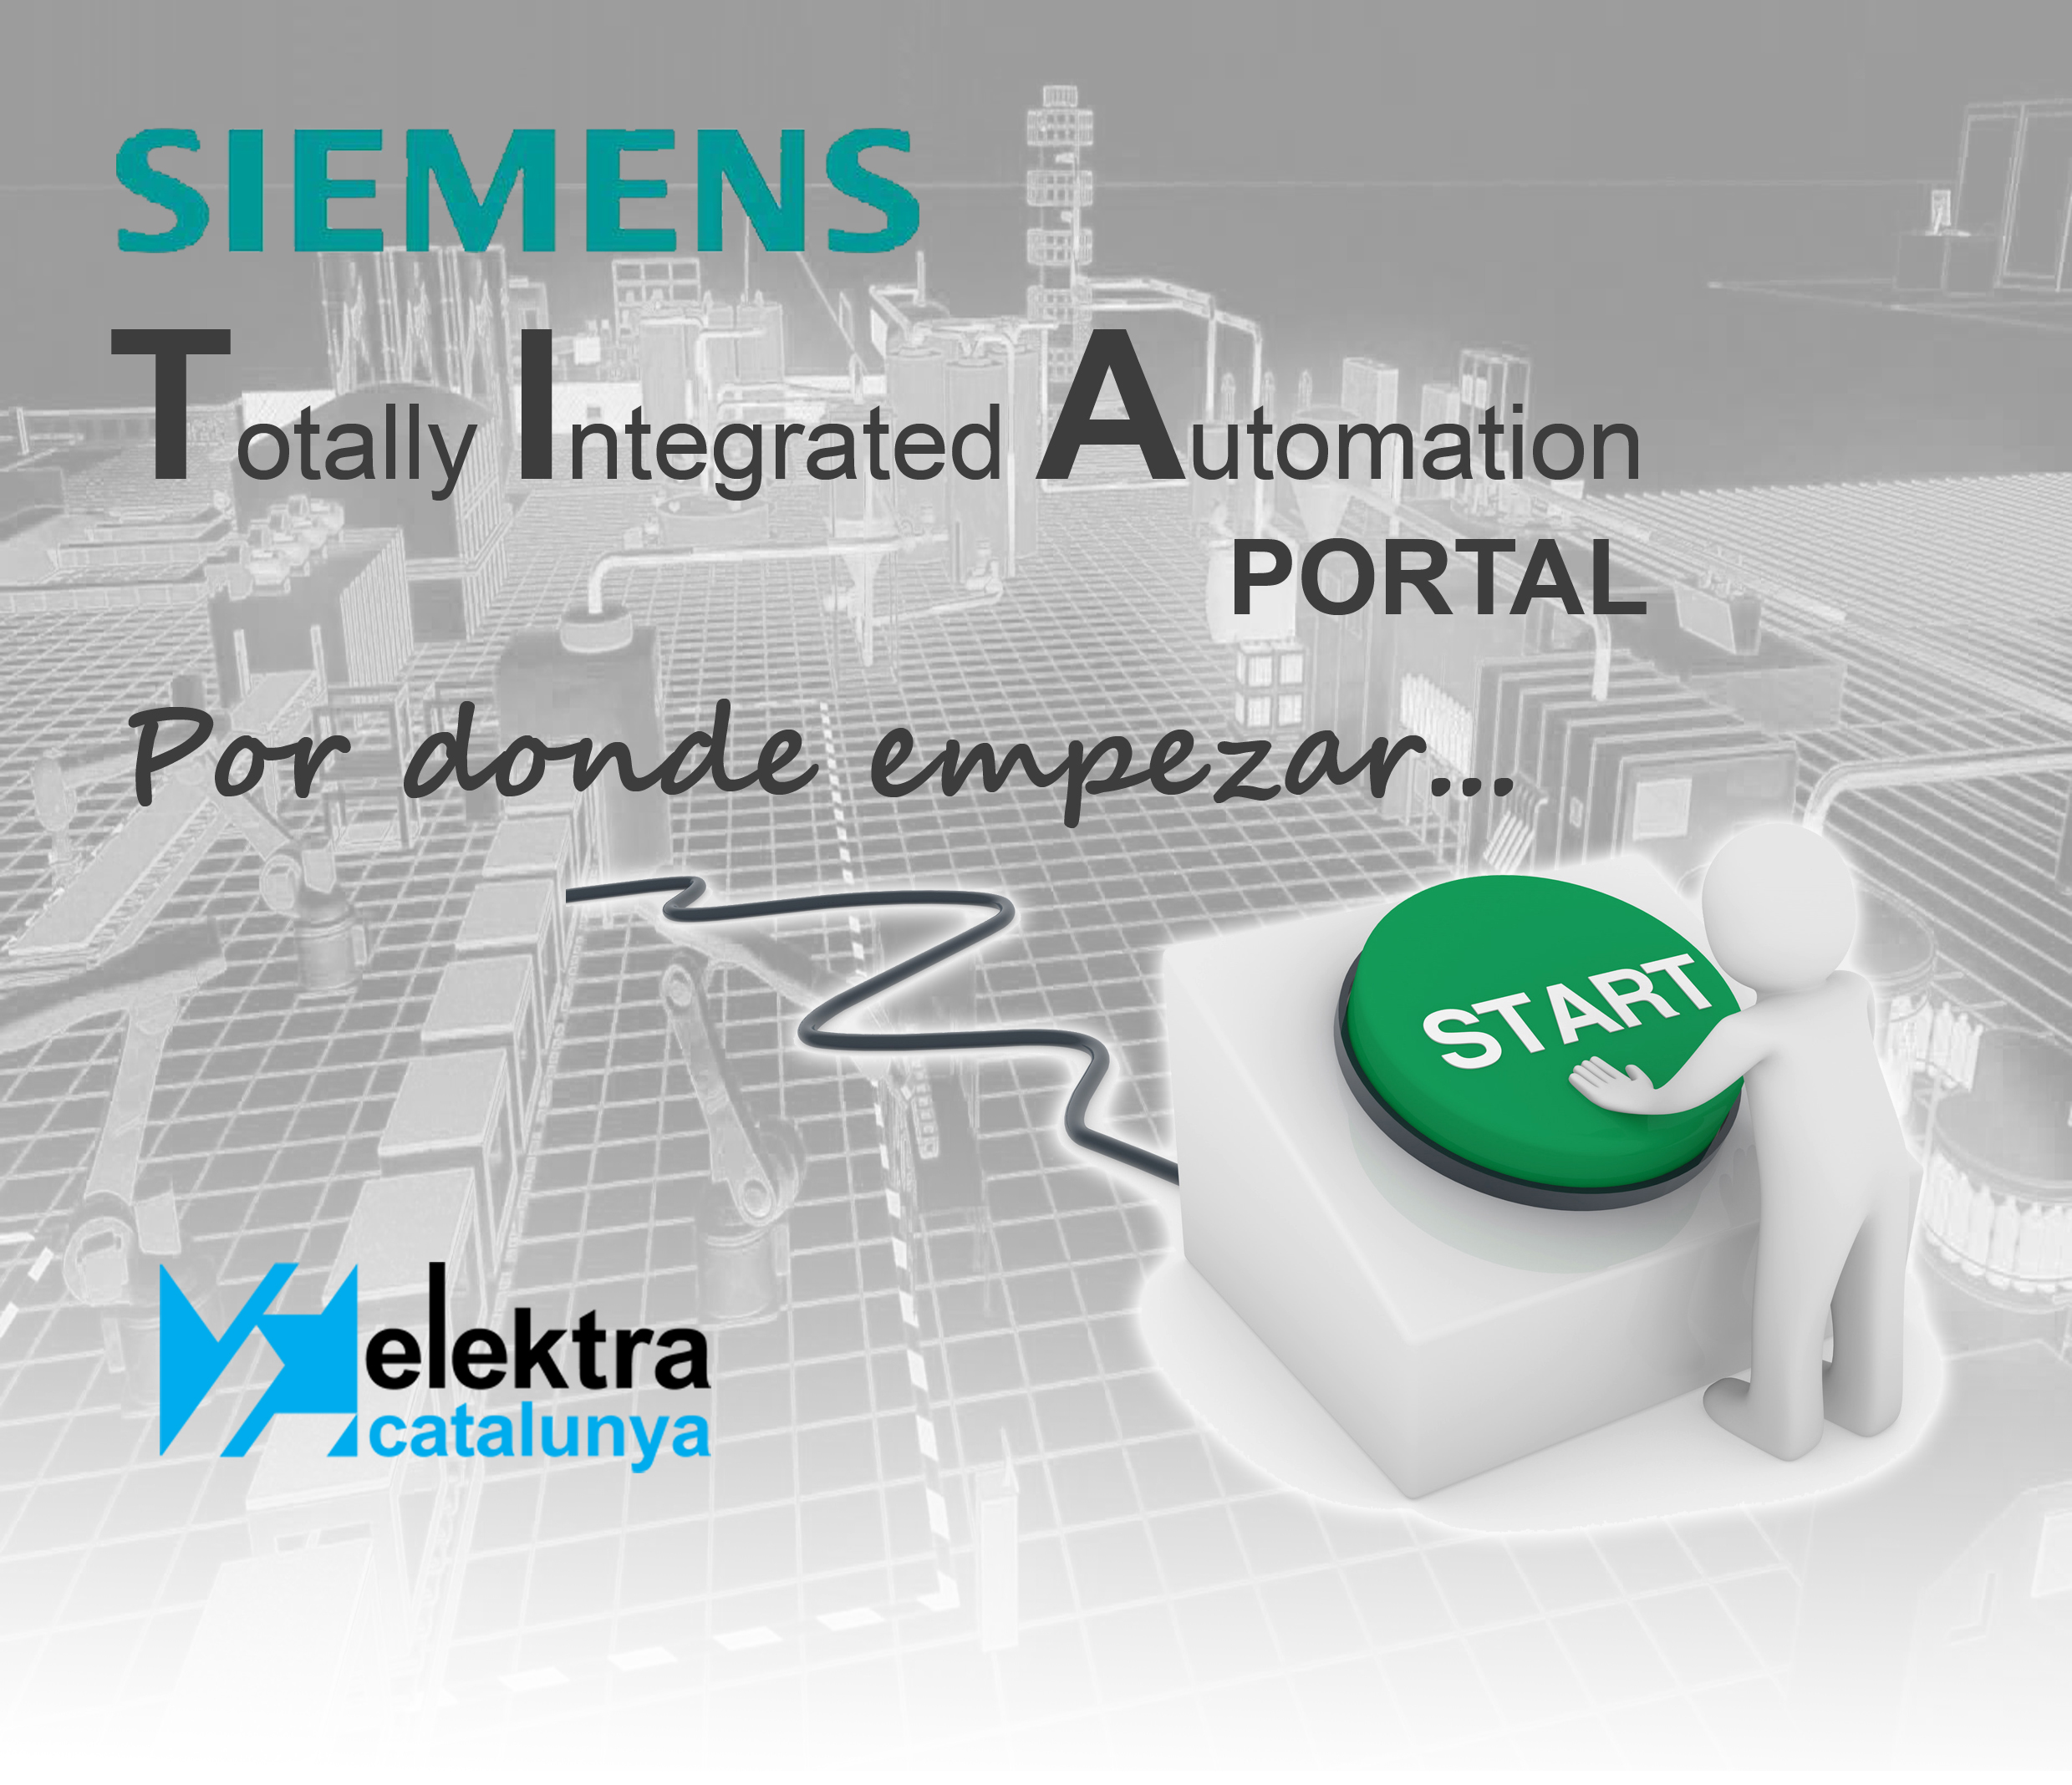 <!--:es-->Formación en TIA Portal de Siemens<!--:-->